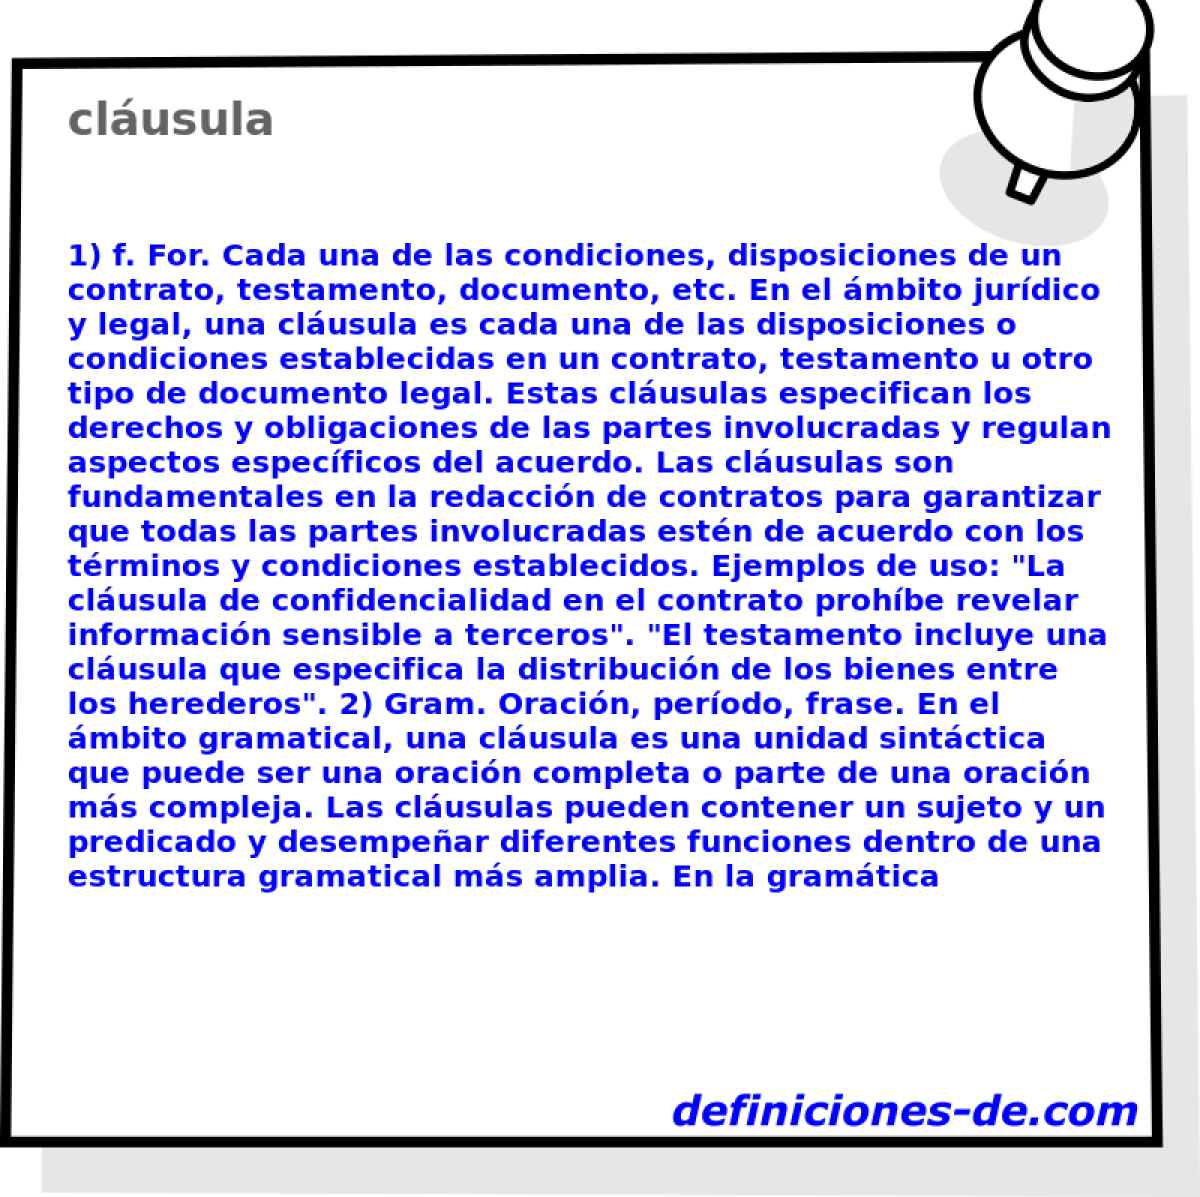 clusula 